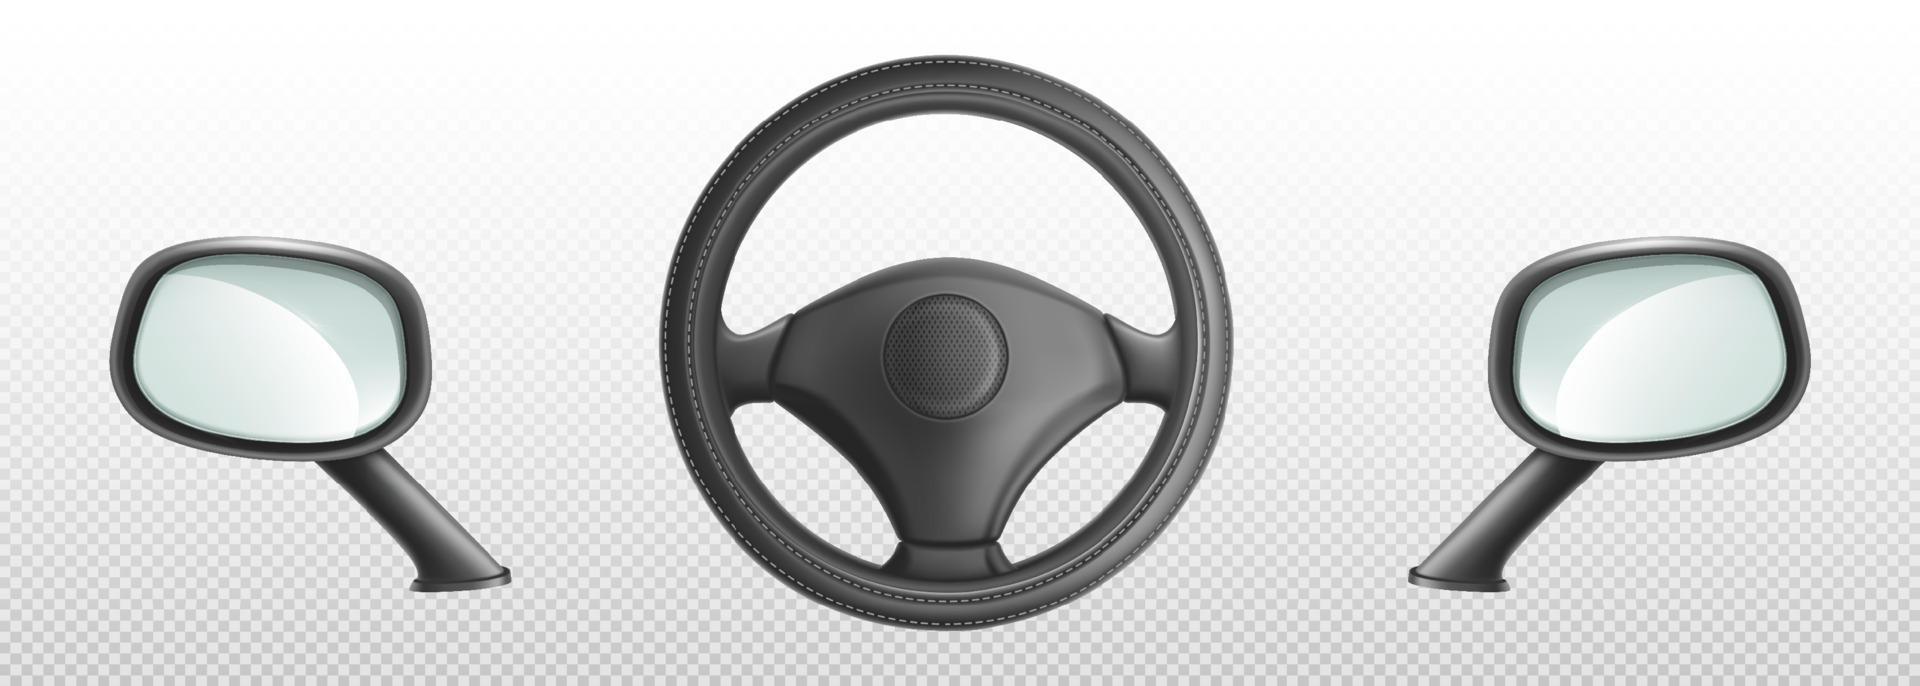 volante de coche y espejos retrovisores laterales vector